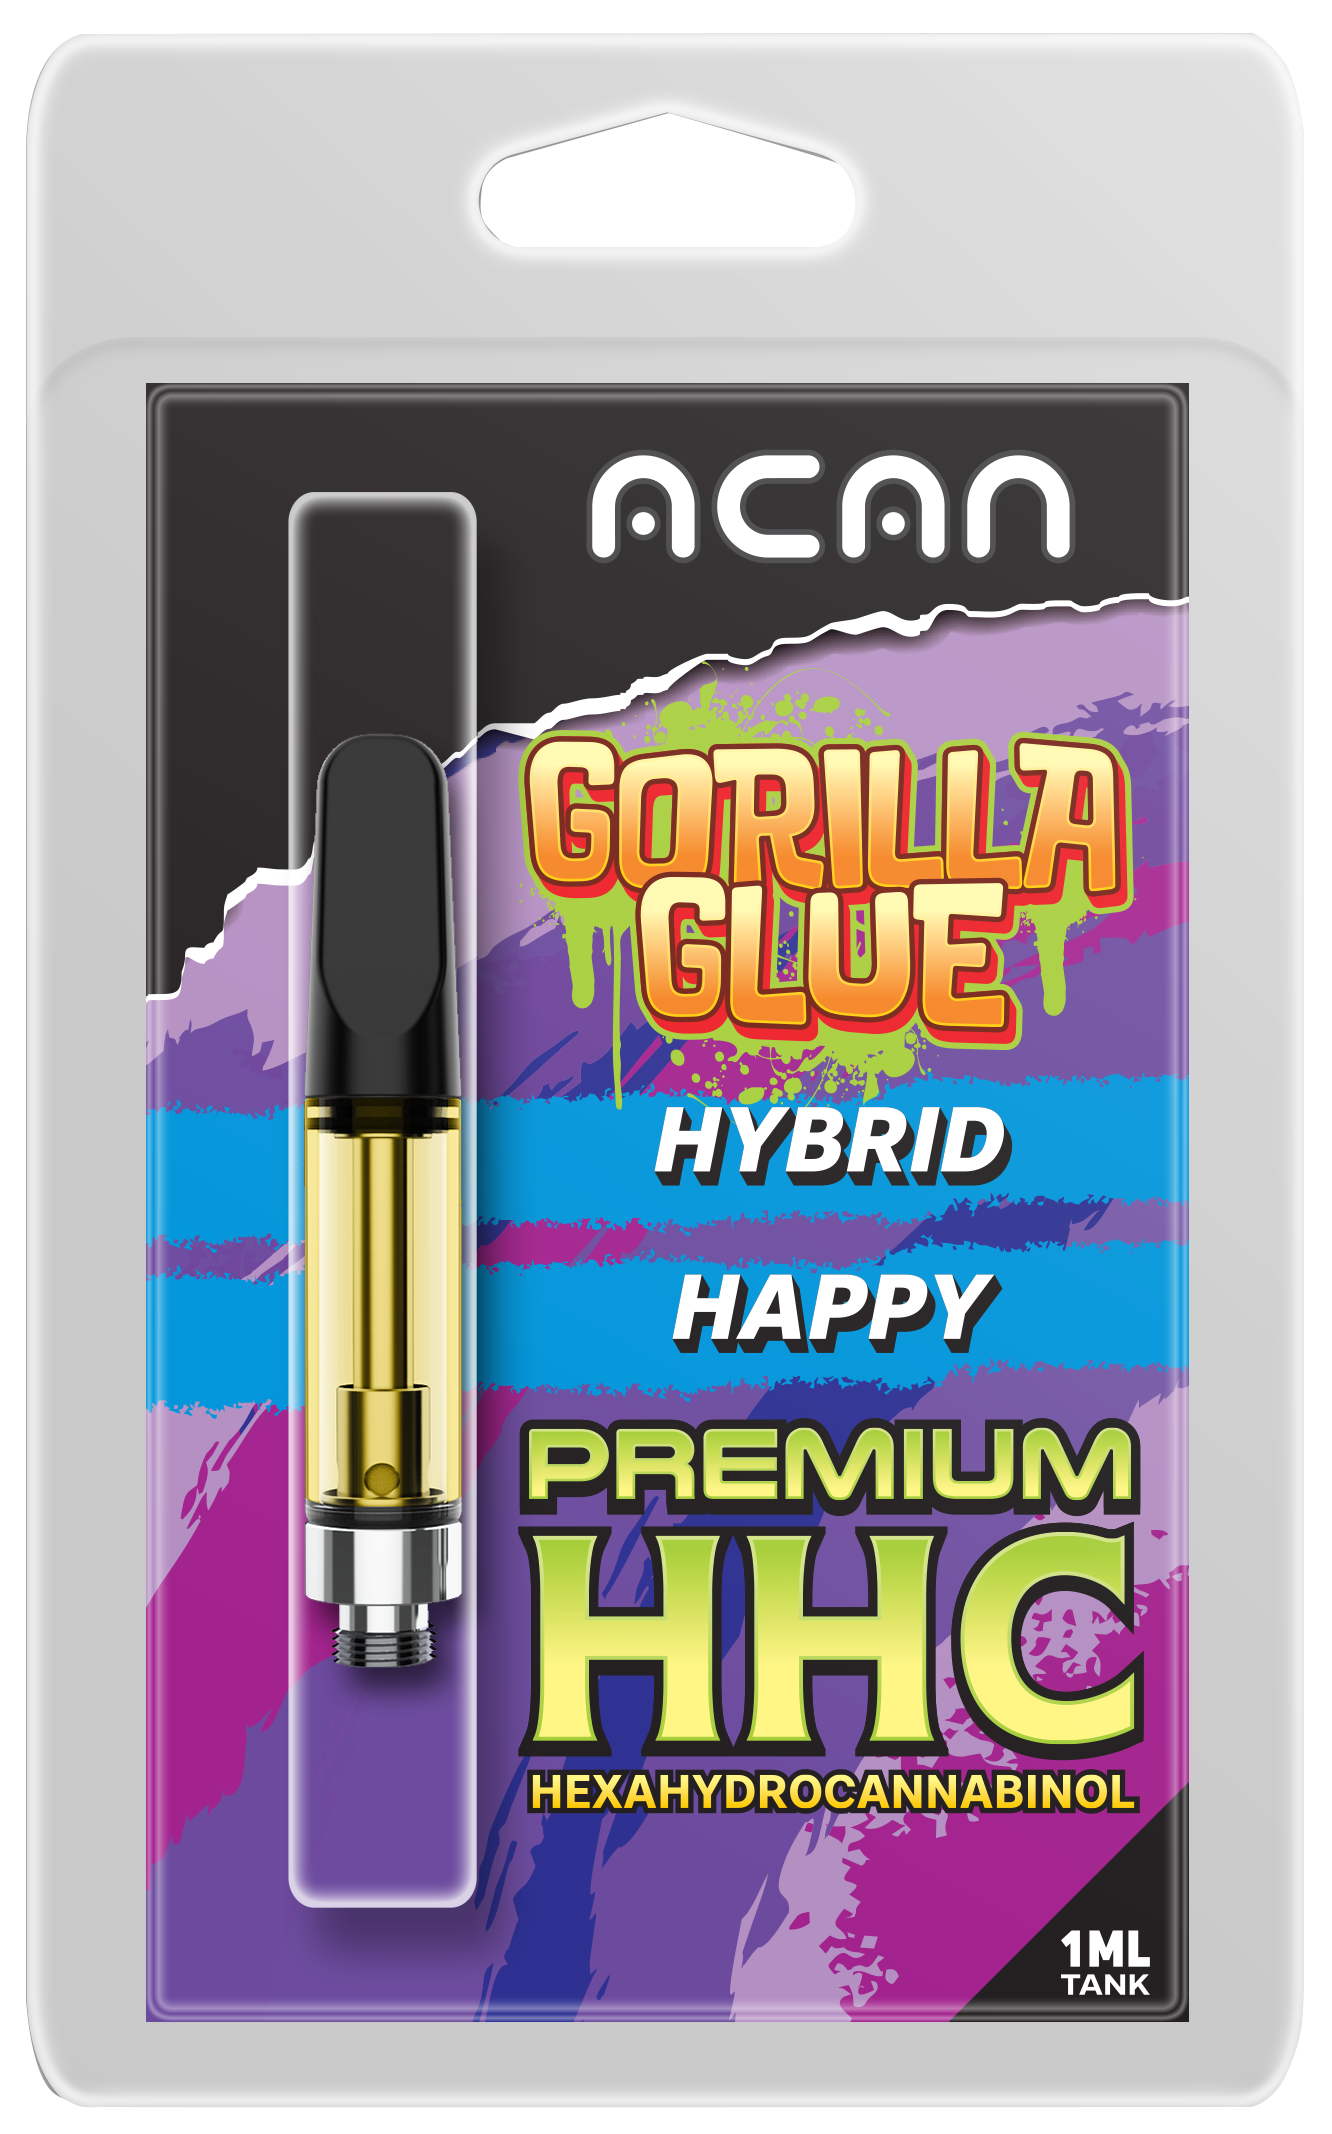 Gorilla Glue Premium HHC